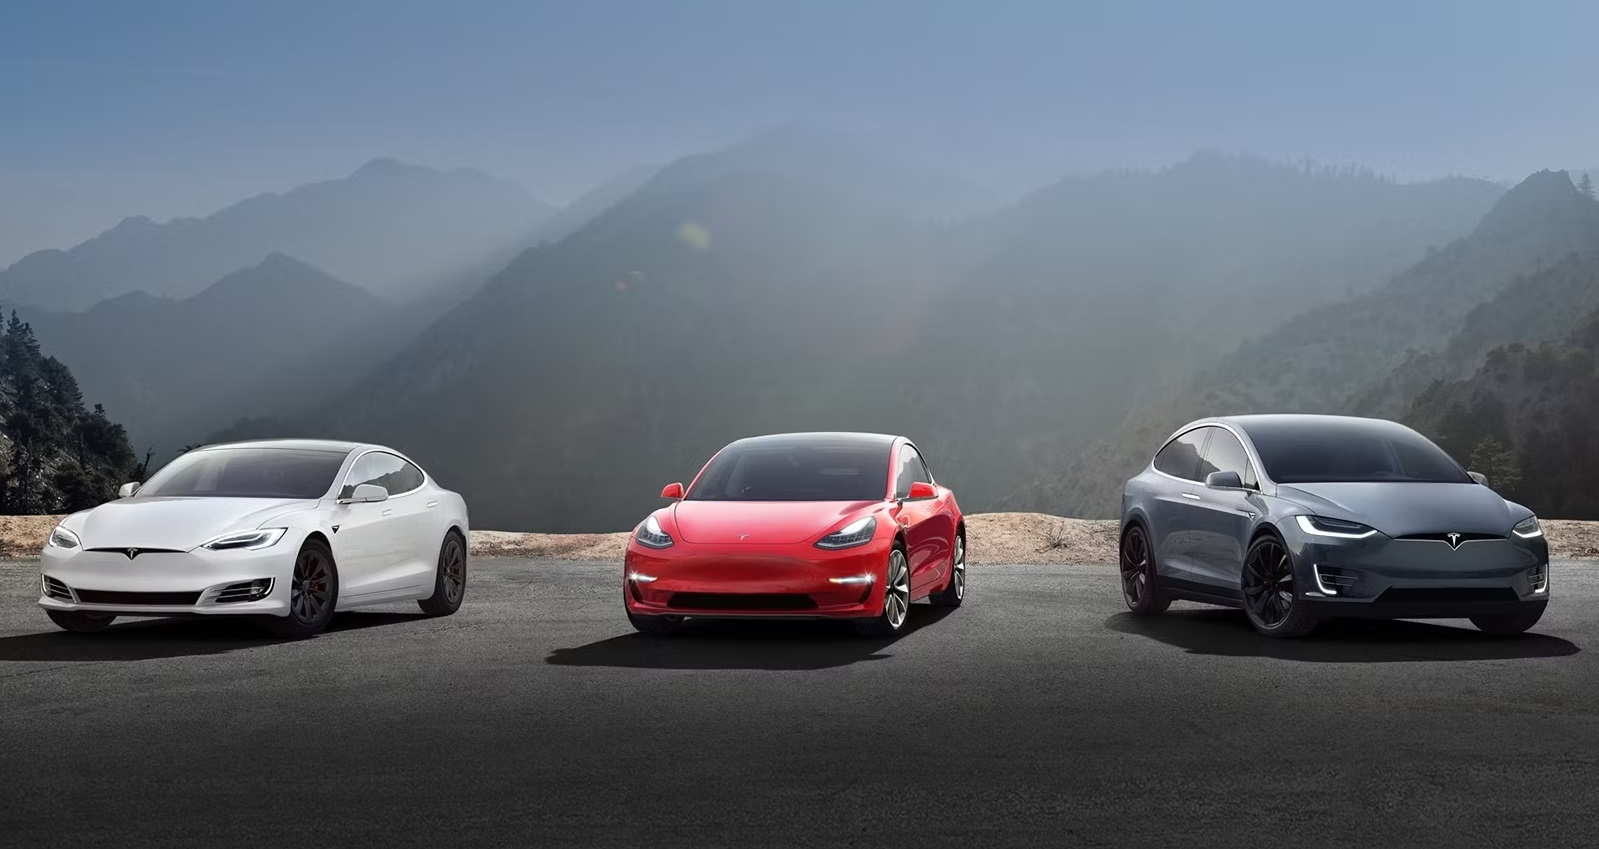 Tesla vuole produrre 20 milioni di auto elettriche all'anno, ma per farlo deve investire 175 miliardi di dollari e aumentare la sua gamma ad almeno 10 modelli